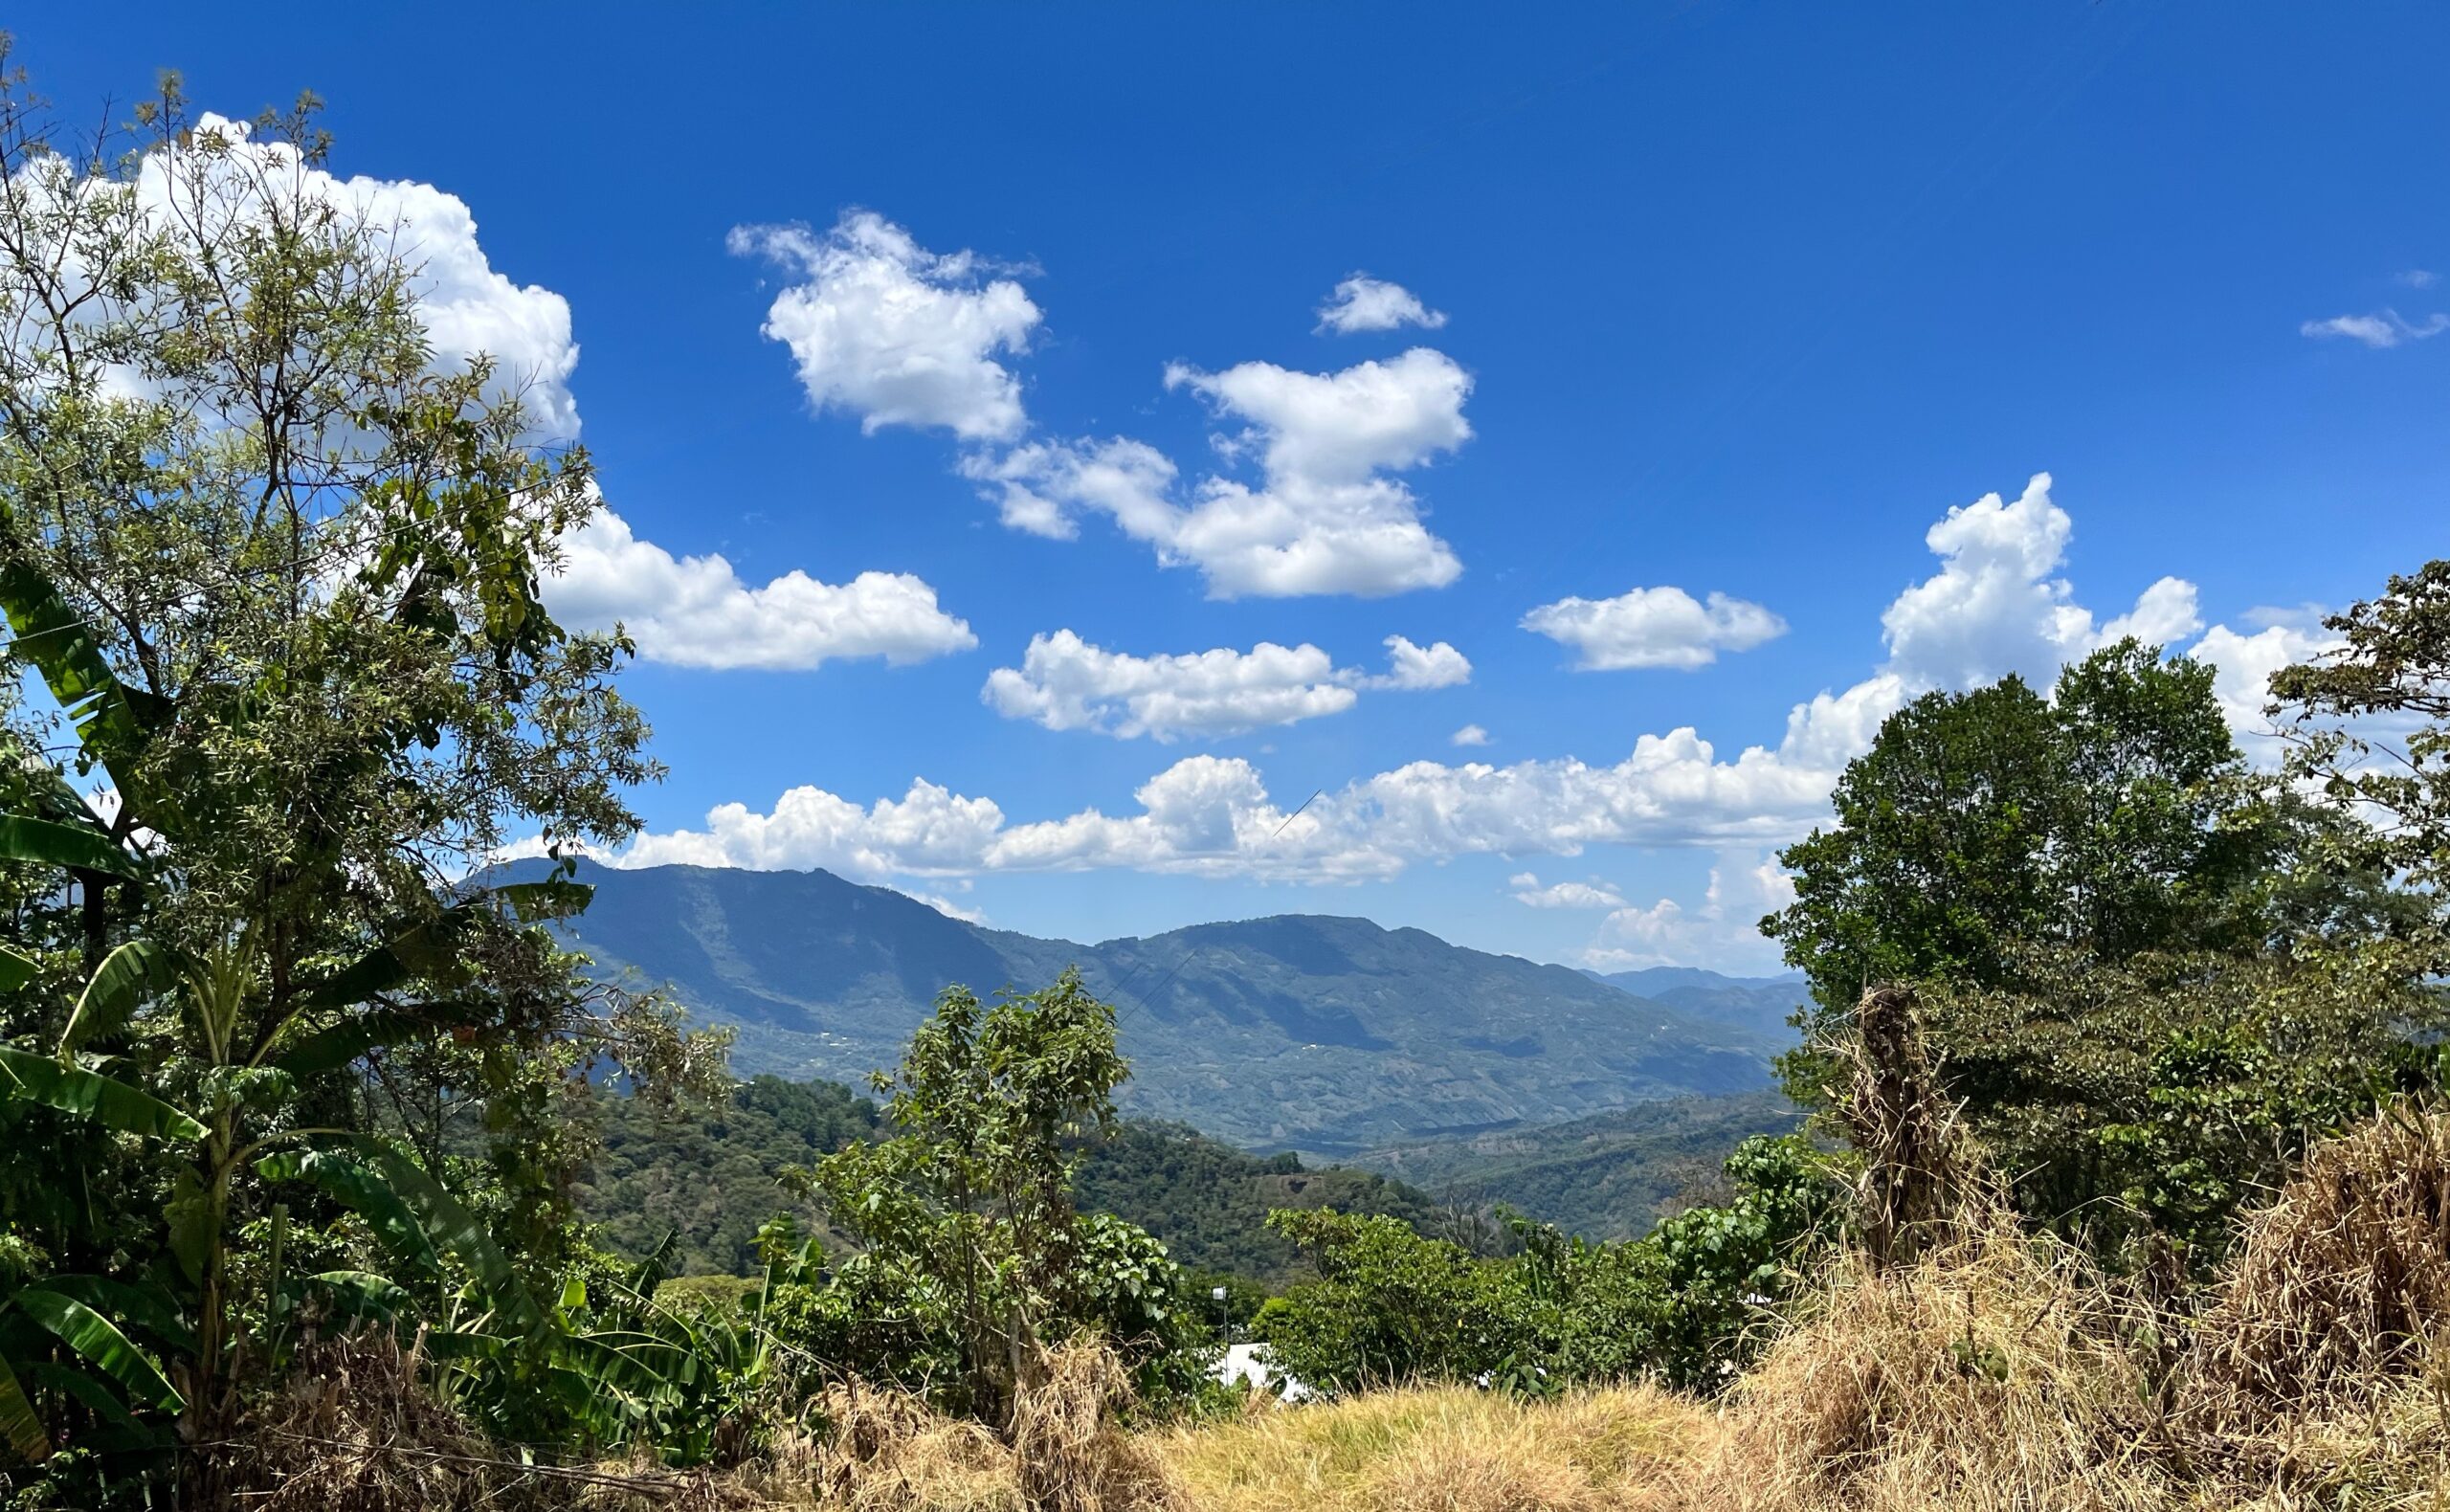 Mejora de los medios de subsistencia y aumento de los ingresos de los pequeños productores de café en Chiapas